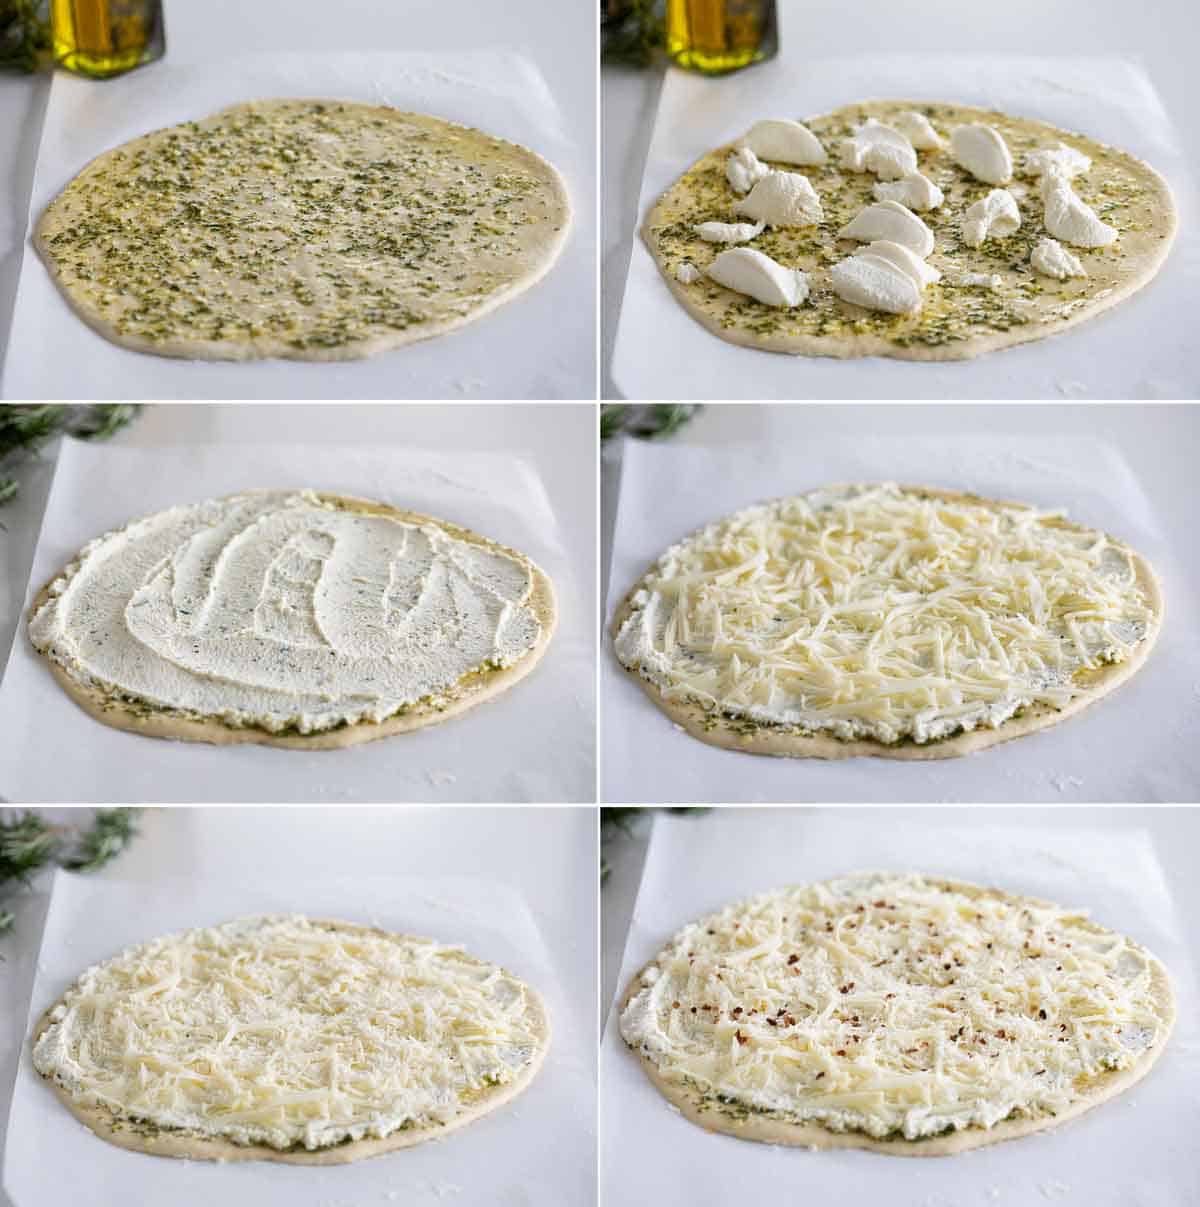 Steps to Make a White Pizza